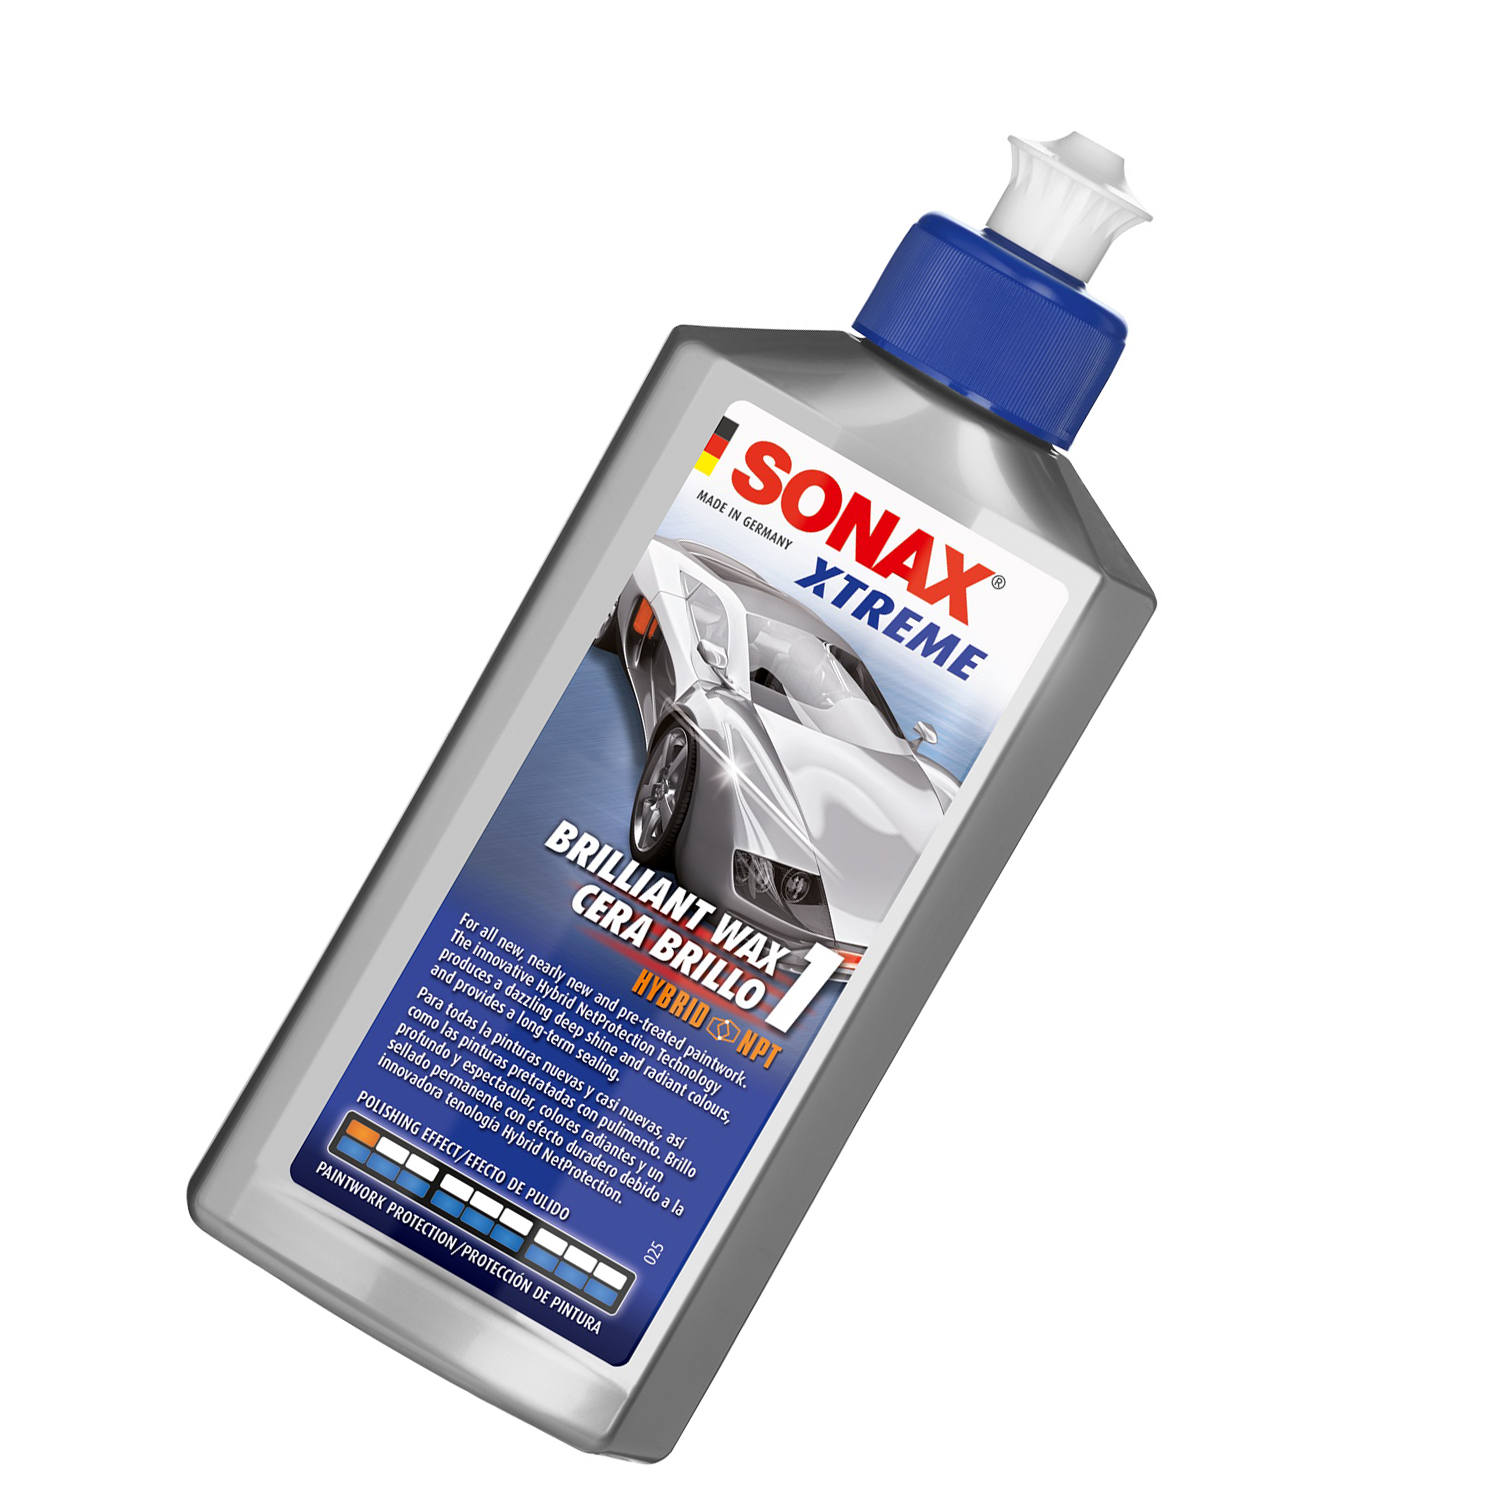 Kem đánh bóng và bảo vệ sơn xe ô tô Sonax 201100 250ml - phục hồi sơn cũ, hiệu ứng lá sen trên sơn, tăng độ mịn cho mặt sơn